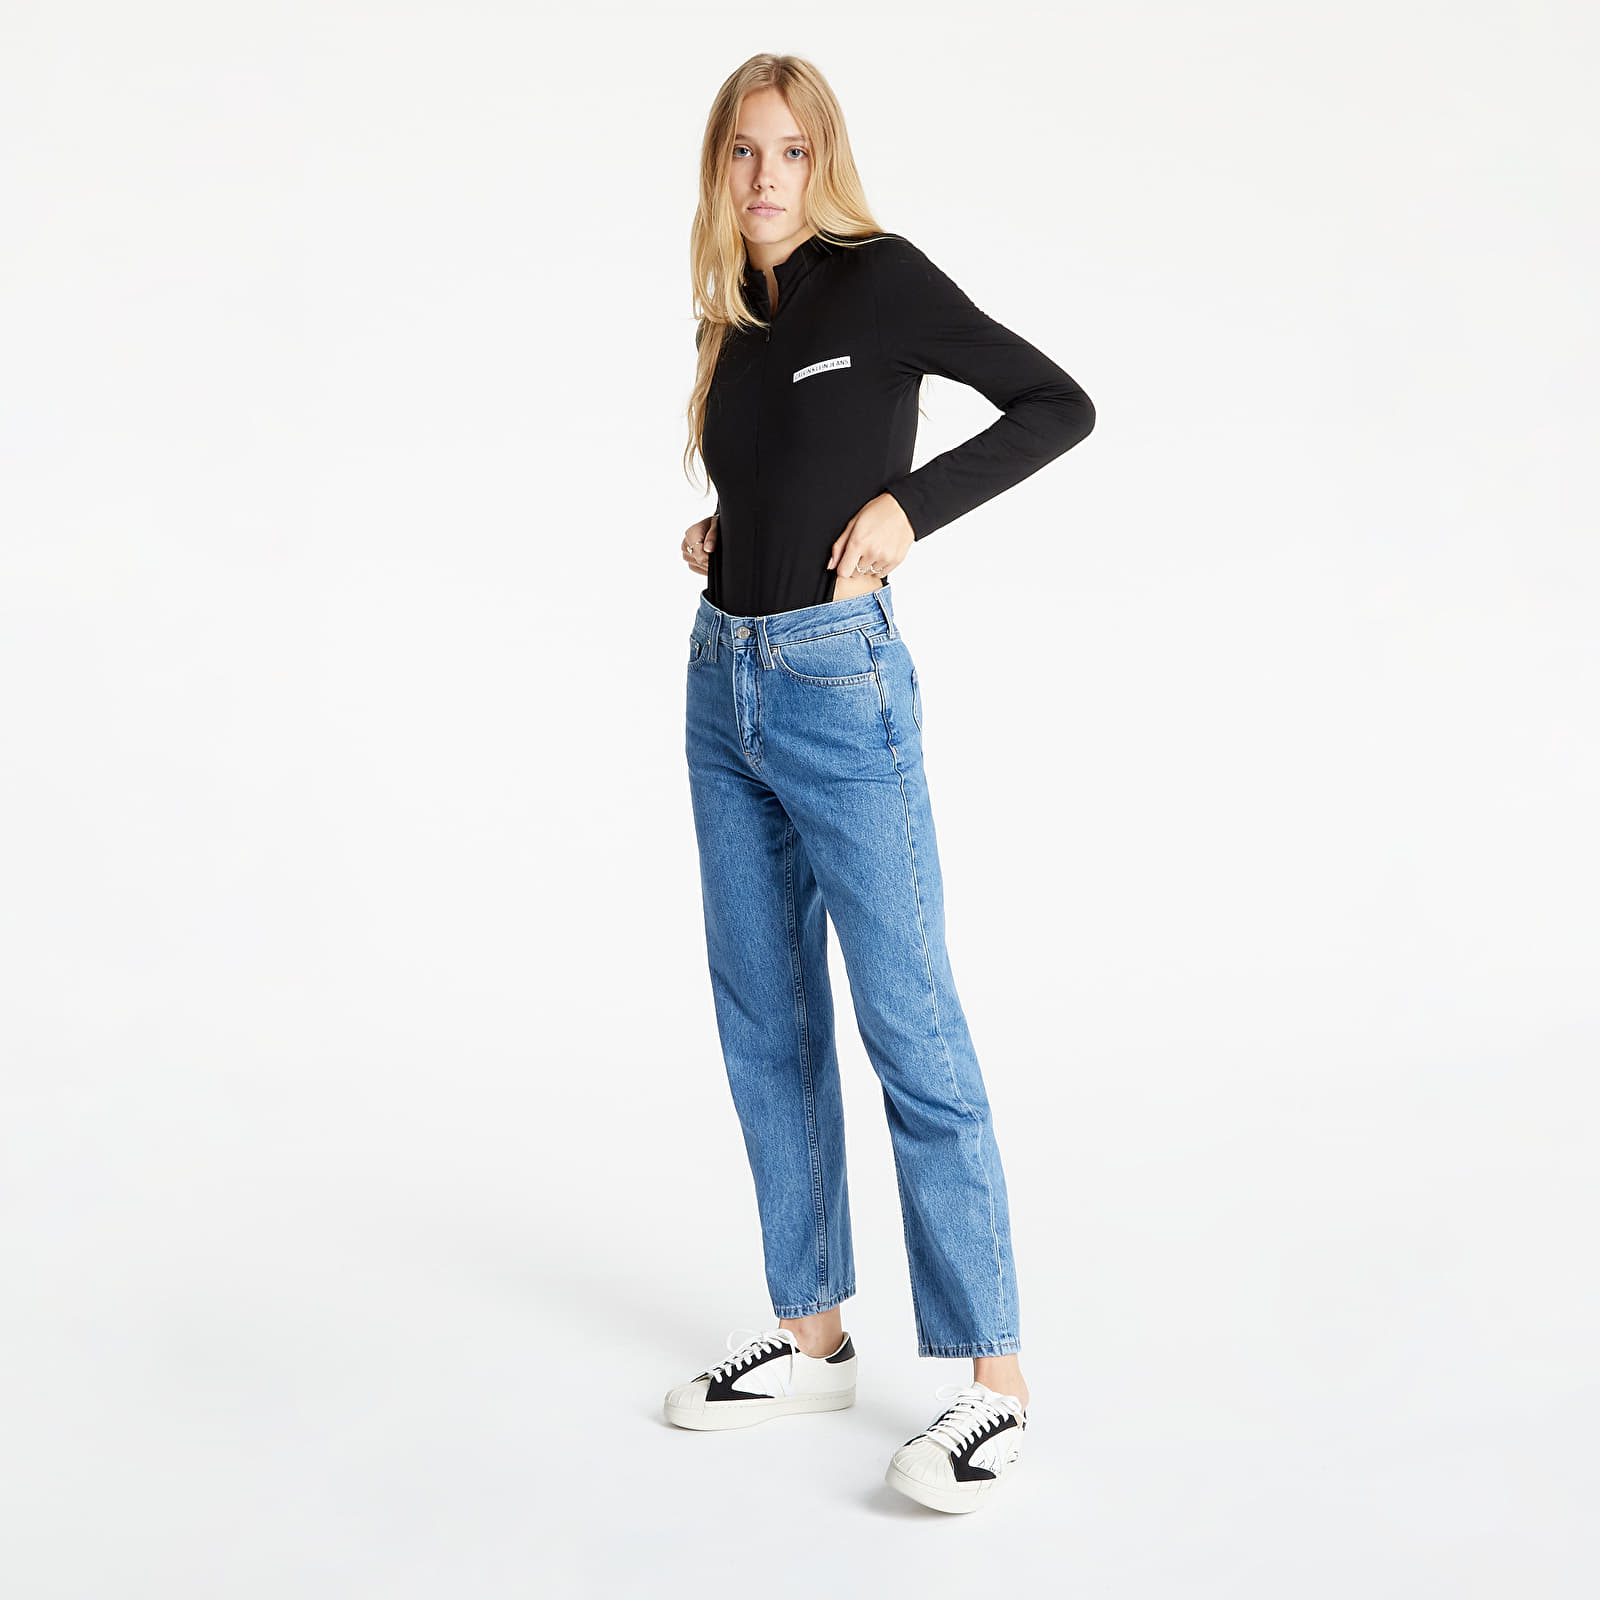 Κορμάκια Calvin Klein Jeans Micro Flock Half Zip Body Ck Black